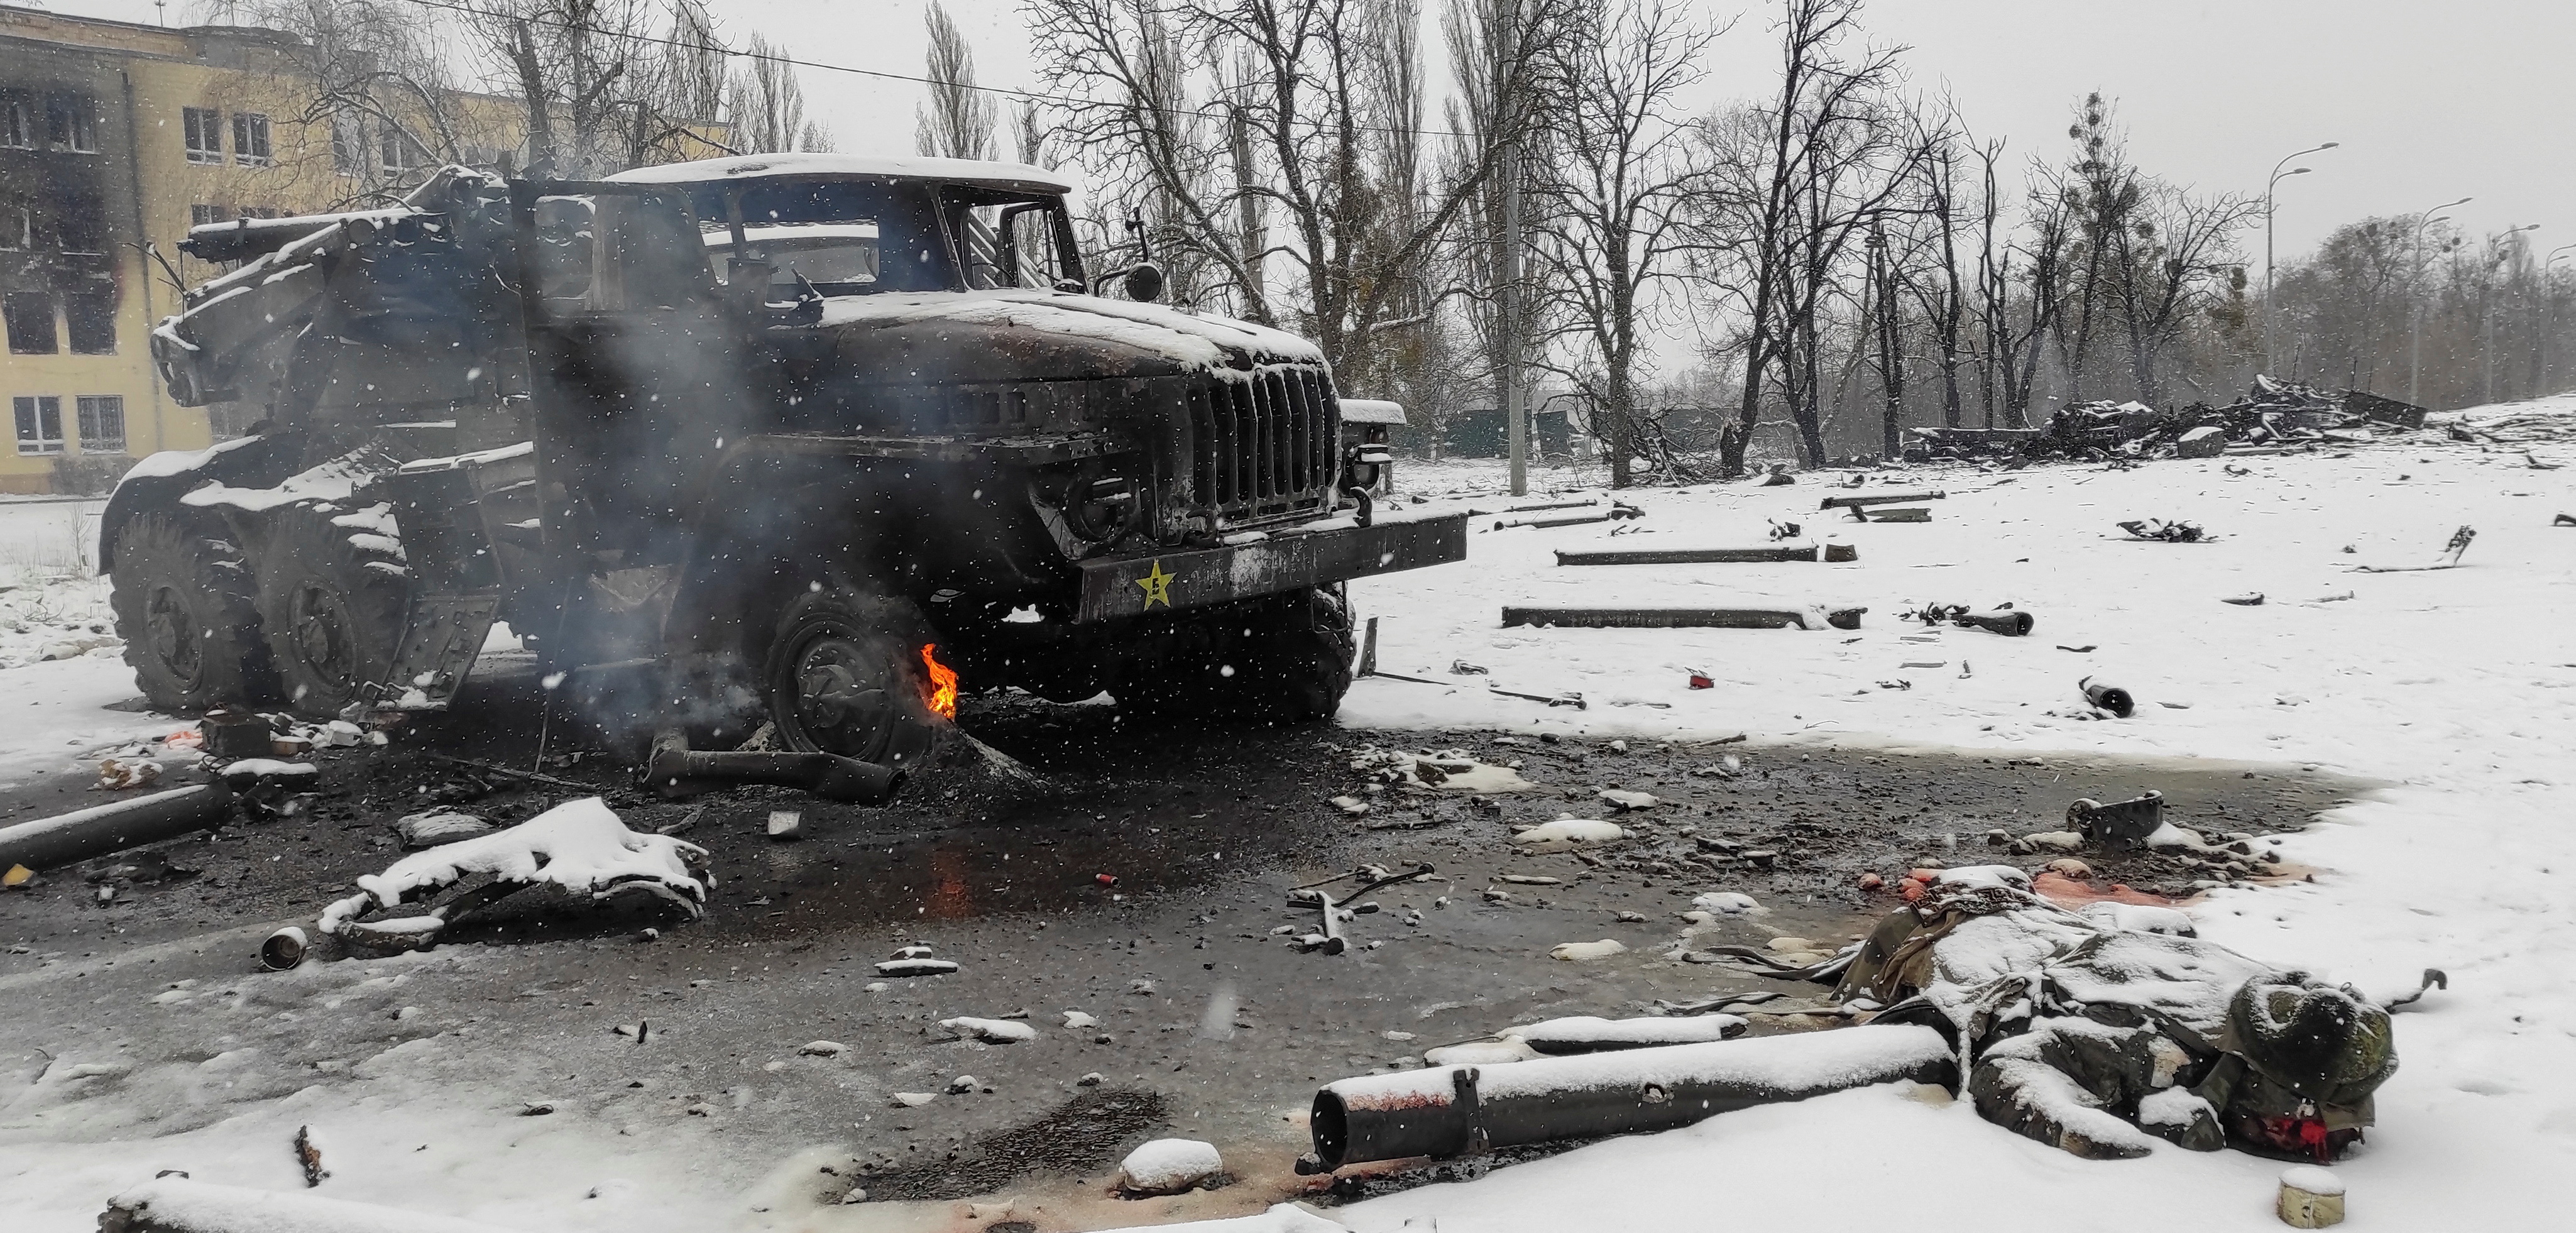 Una vista muestra un lanzacohetes múltiple del ejército ruso destruido con la letra "Z" pintada en su lado en Kharkiv, Ucrania 25 de febrero de 2022 (Reuters)
